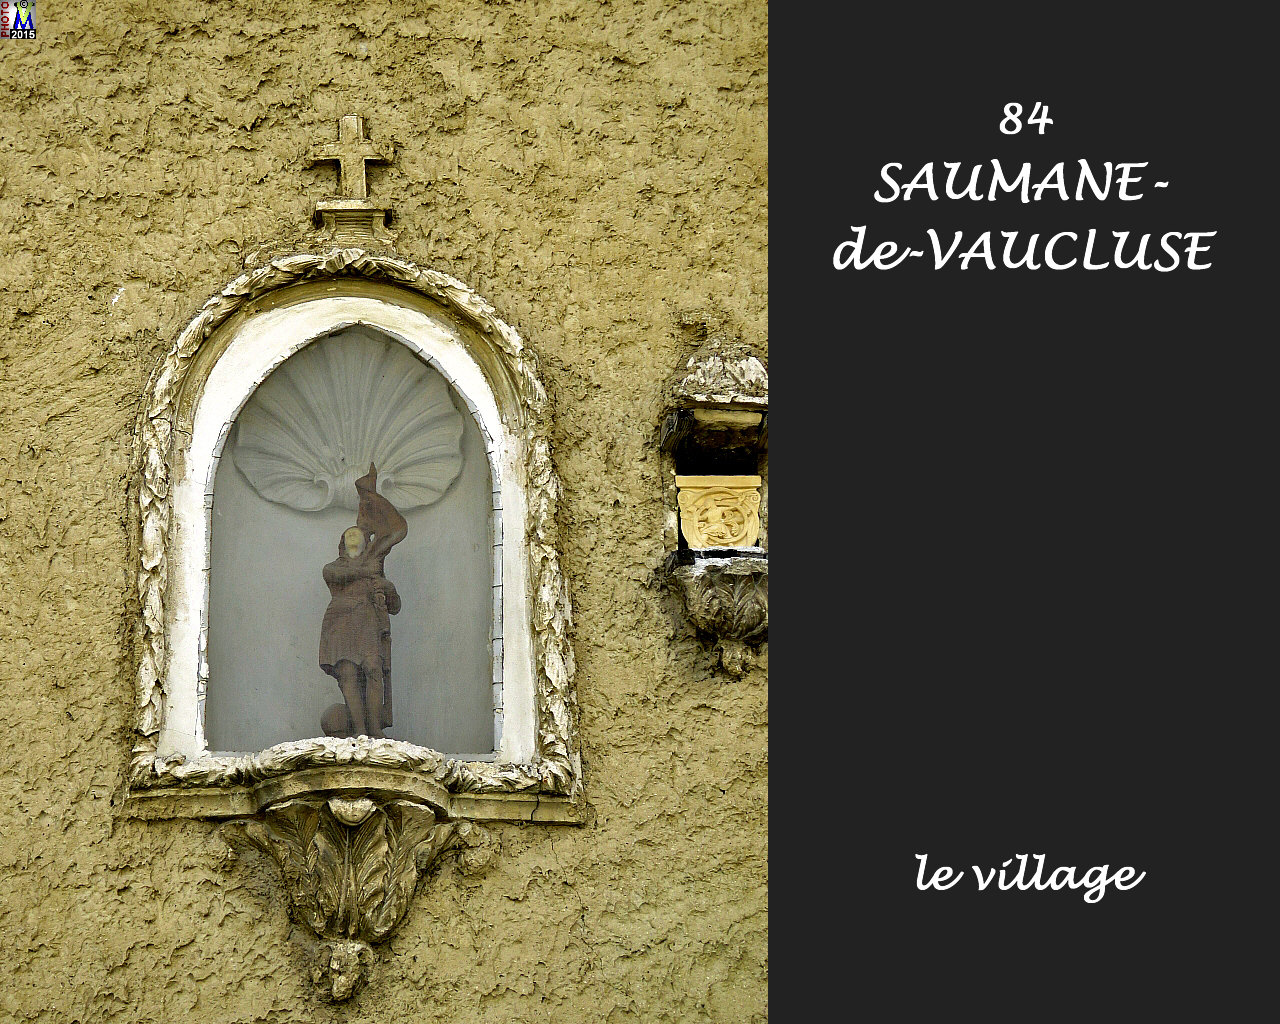 84SAUMANE-VAUCLUSE_village_154.jpg